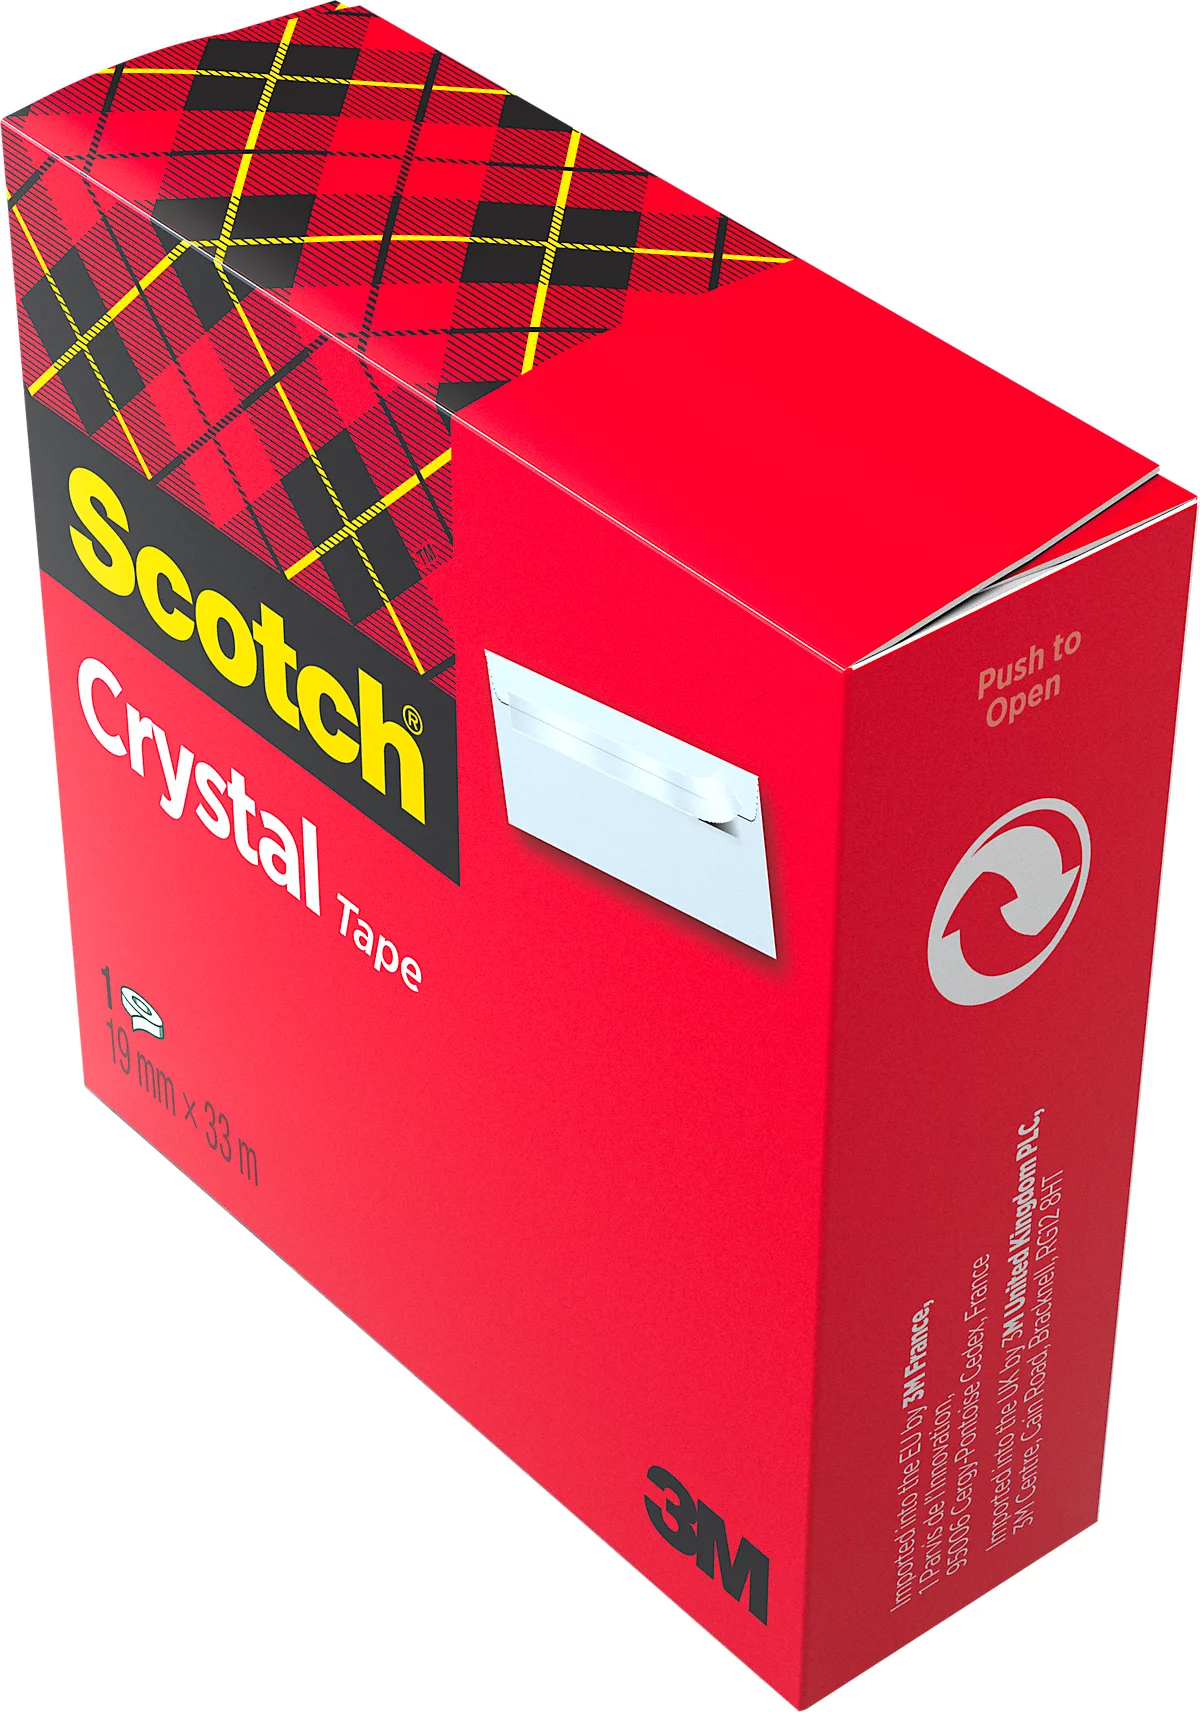 Scotch Klebeband Crystal Tape 600 19mmx33m - günstig kaufen